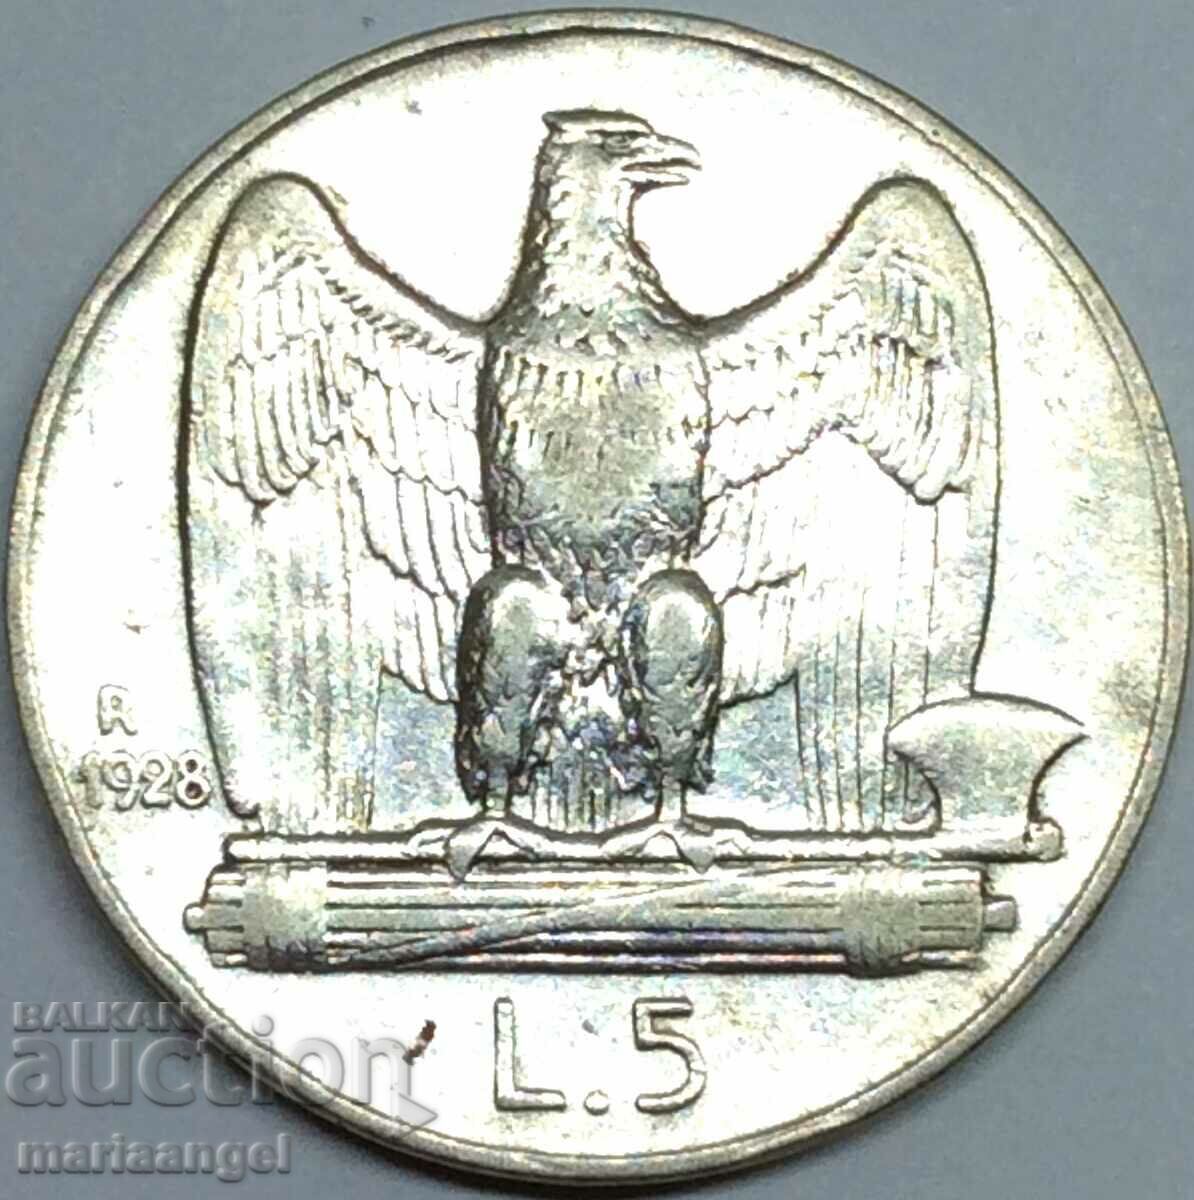 5 lira 1928 Italy silver